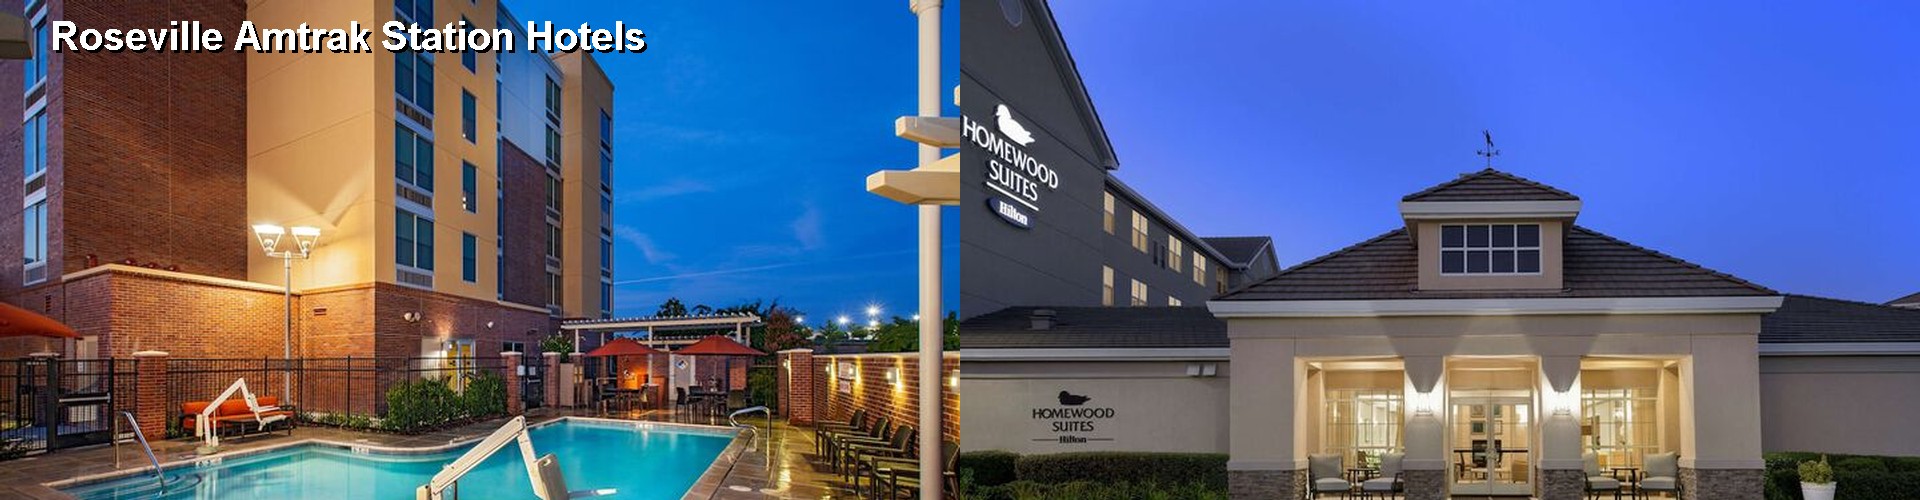 5 Best Hotels near Roseville Amtrak Station